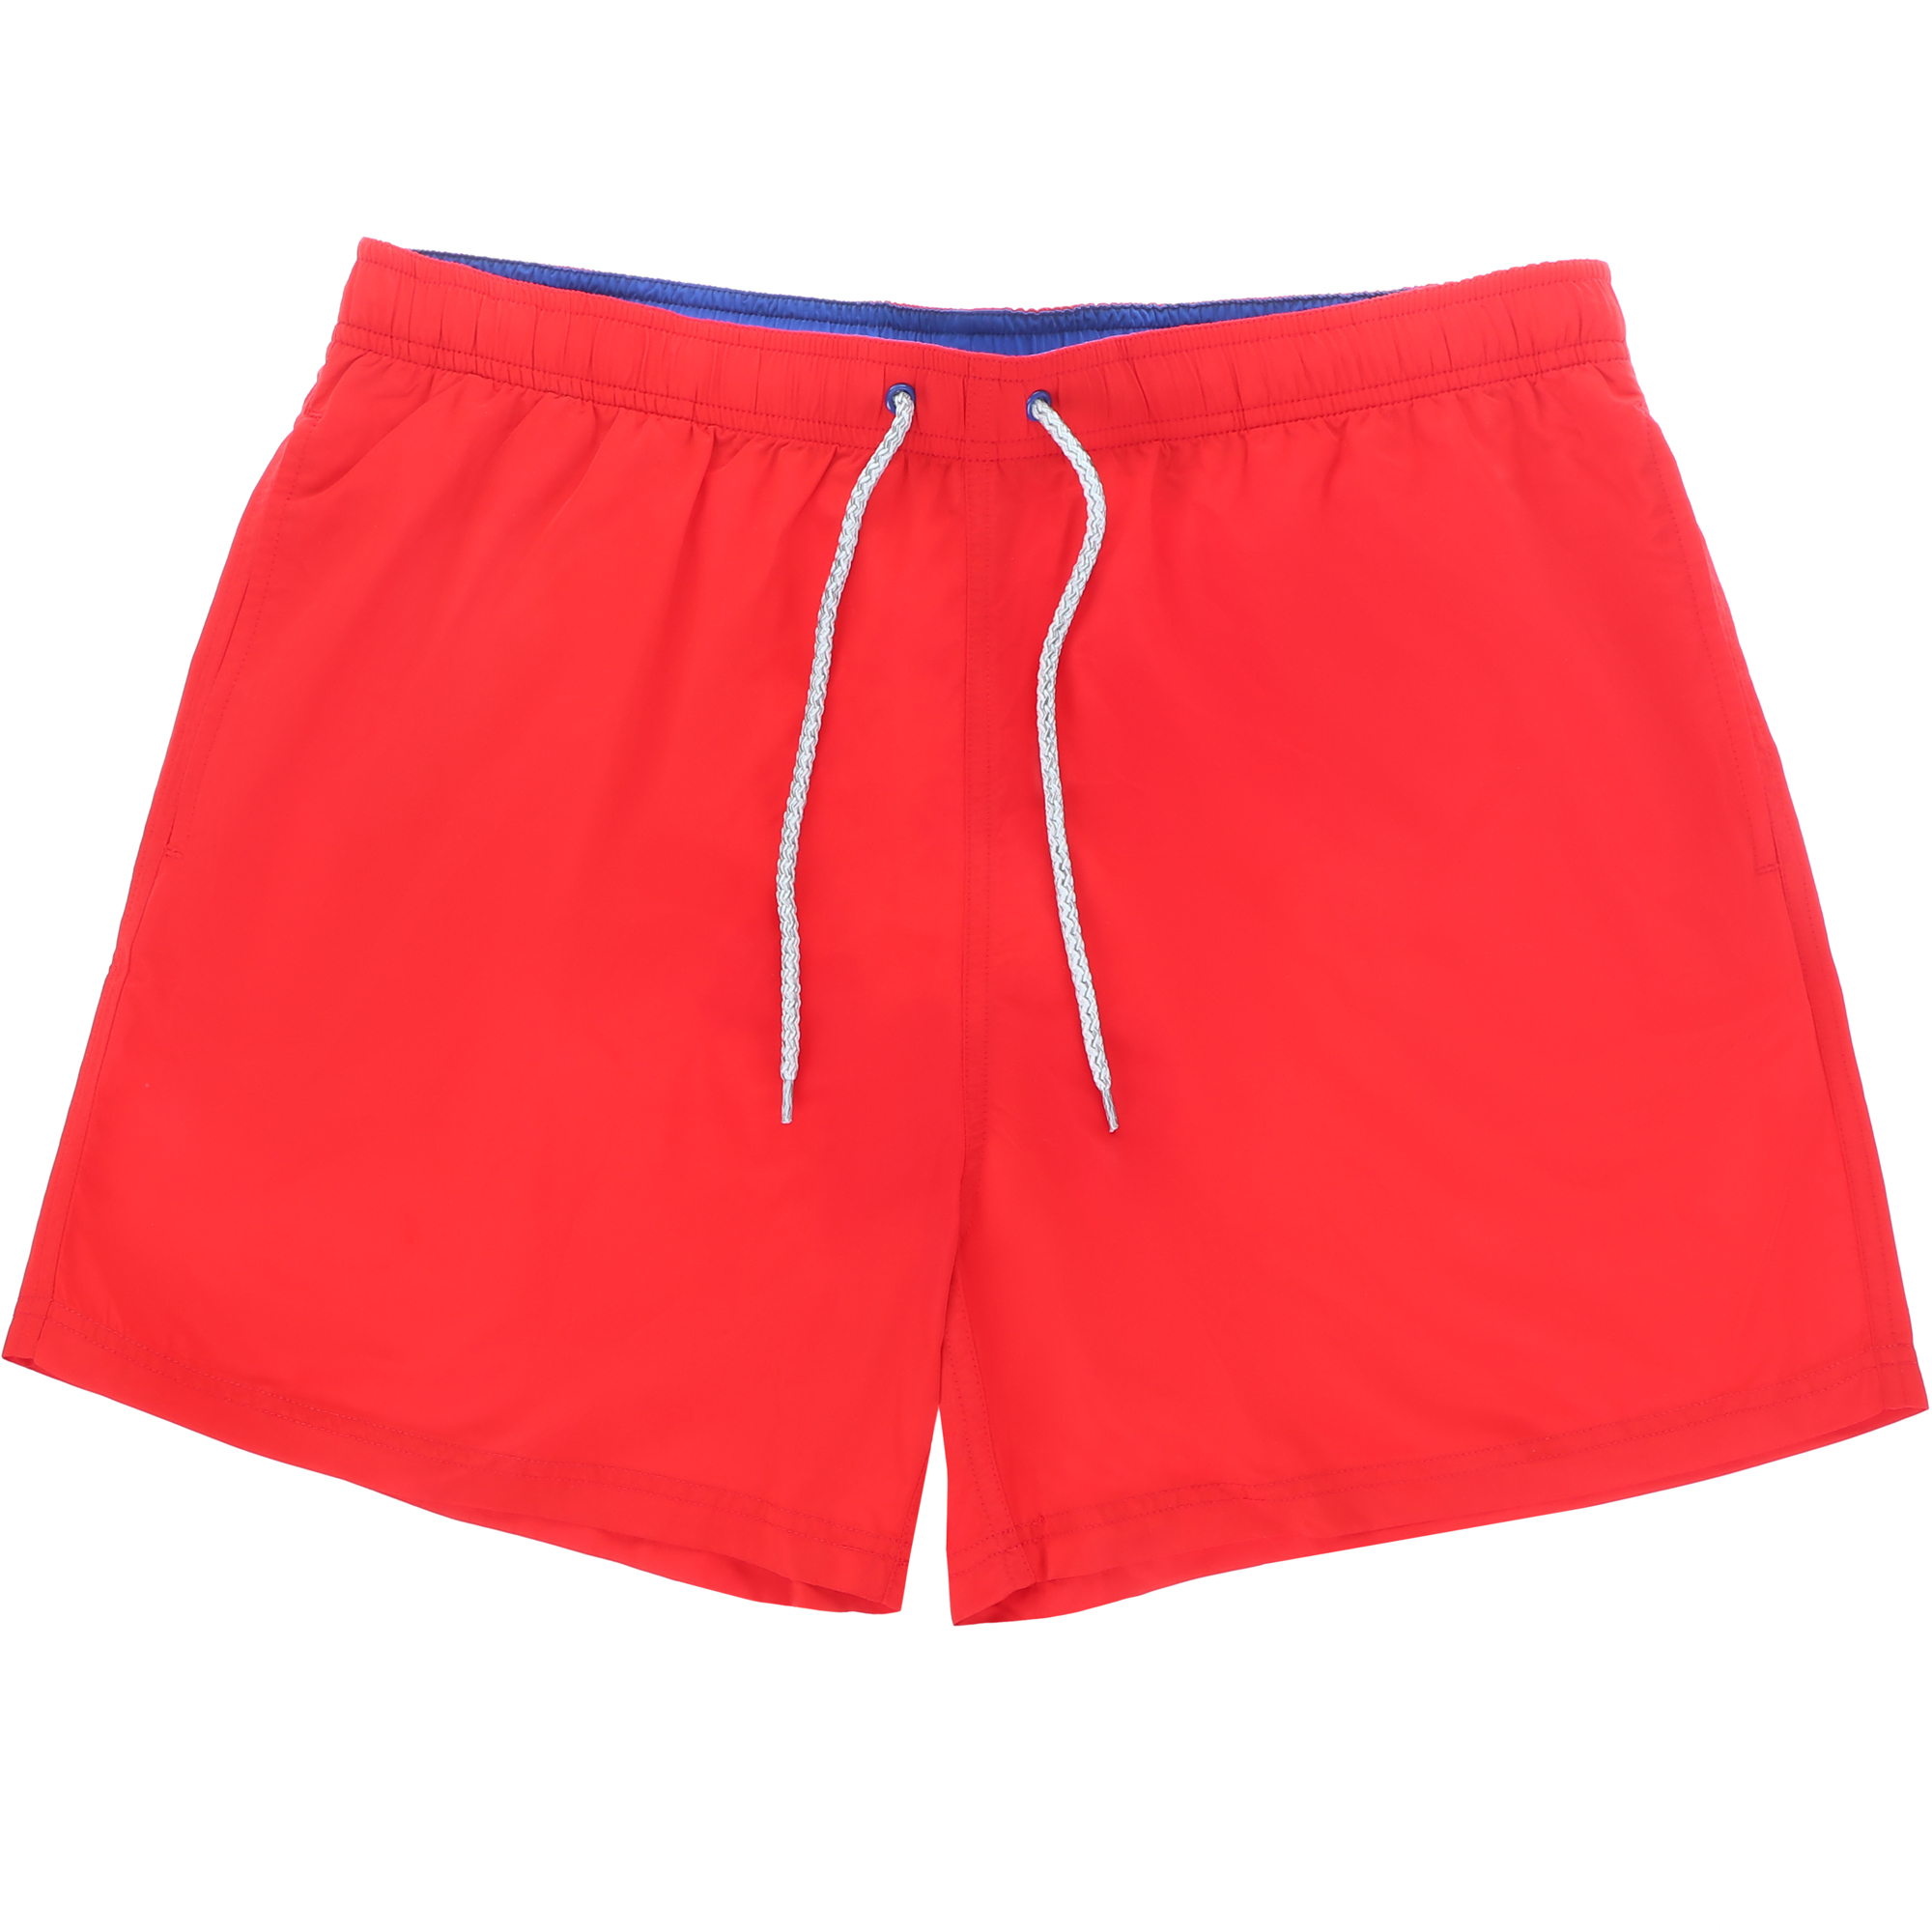 Мужские пляжные шорты Joyord красные, цвет красный, размер L - фото 1